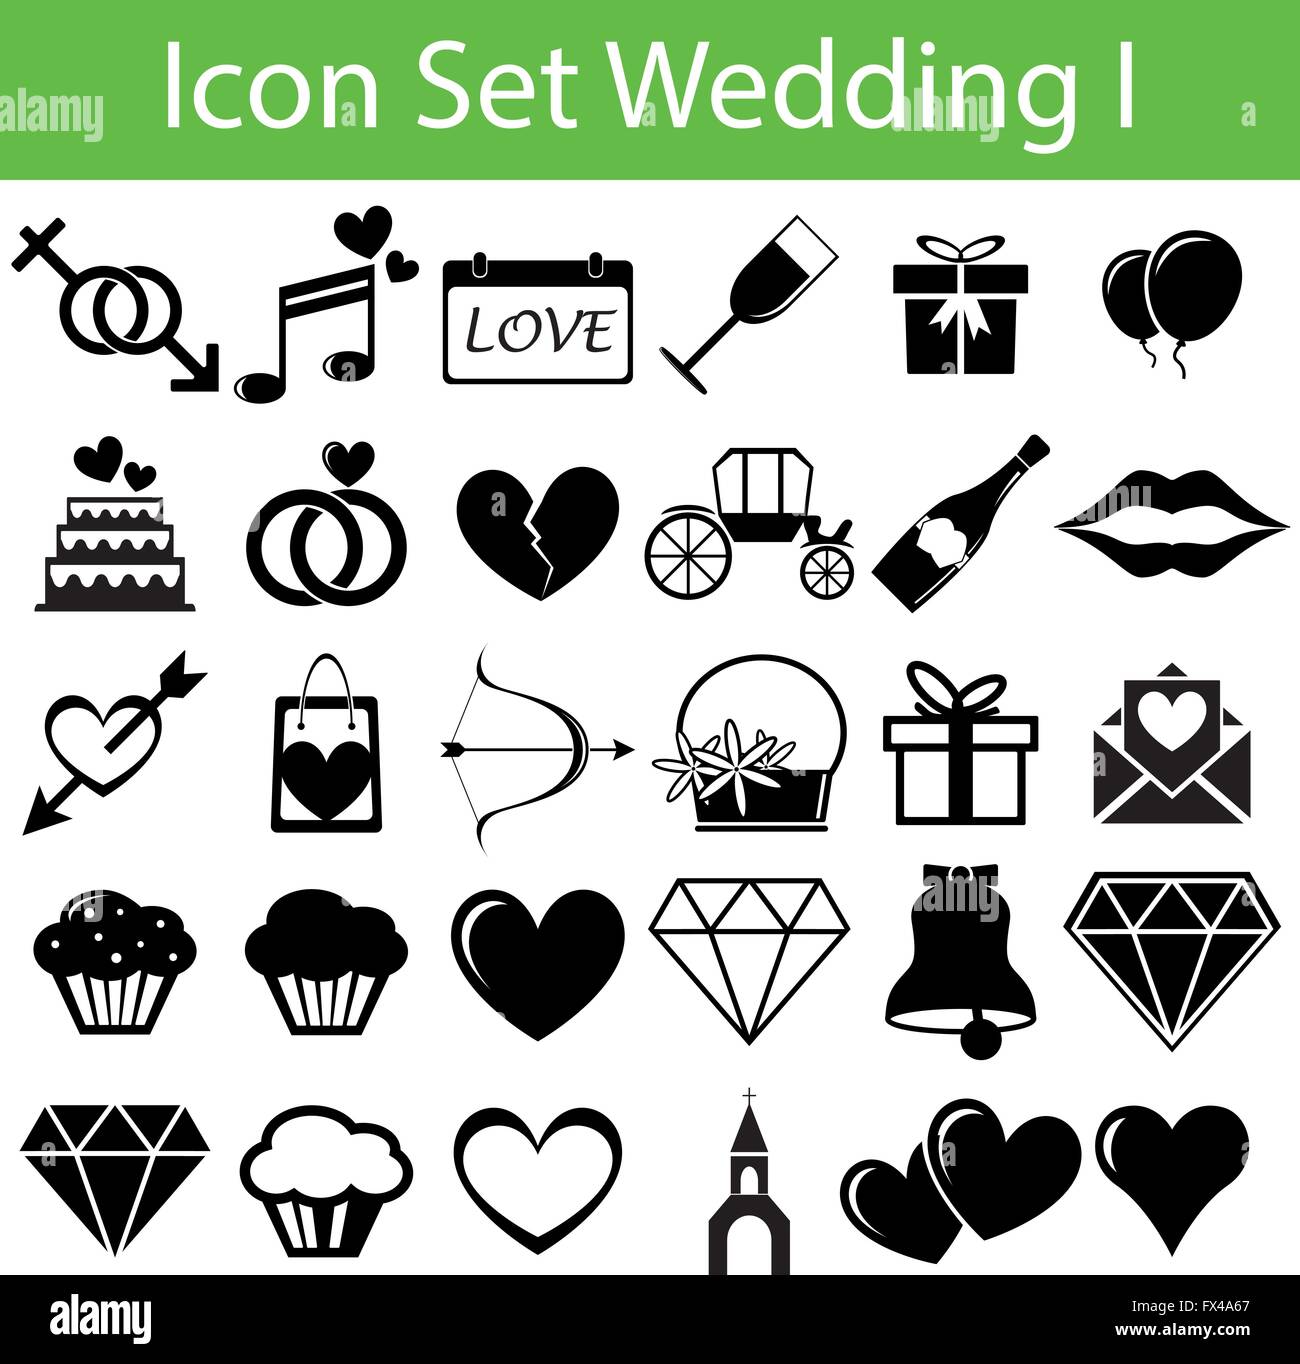 Icon-Set Hochzeit I mit 30 Symbole für verschiedene Kauf Stock Vektor